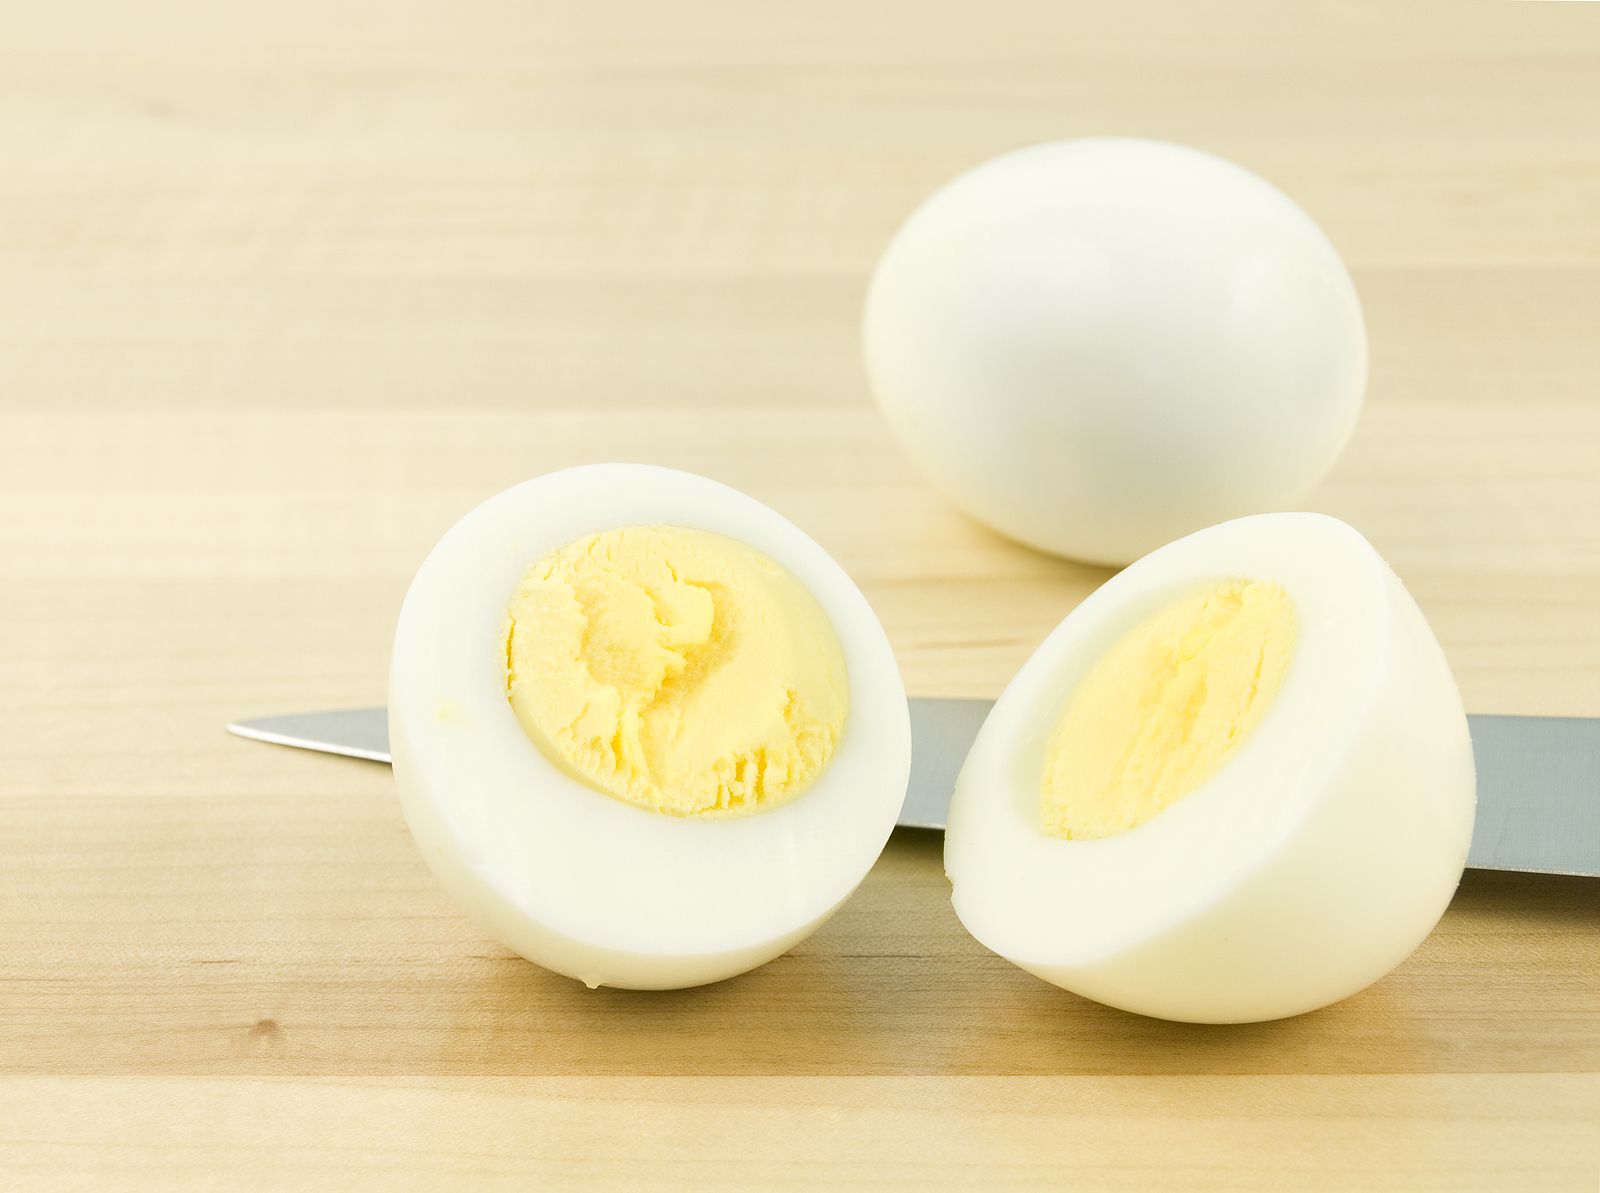 Un estudio explica cómo cocinar los huevos para aprovechar toda su vitamina D